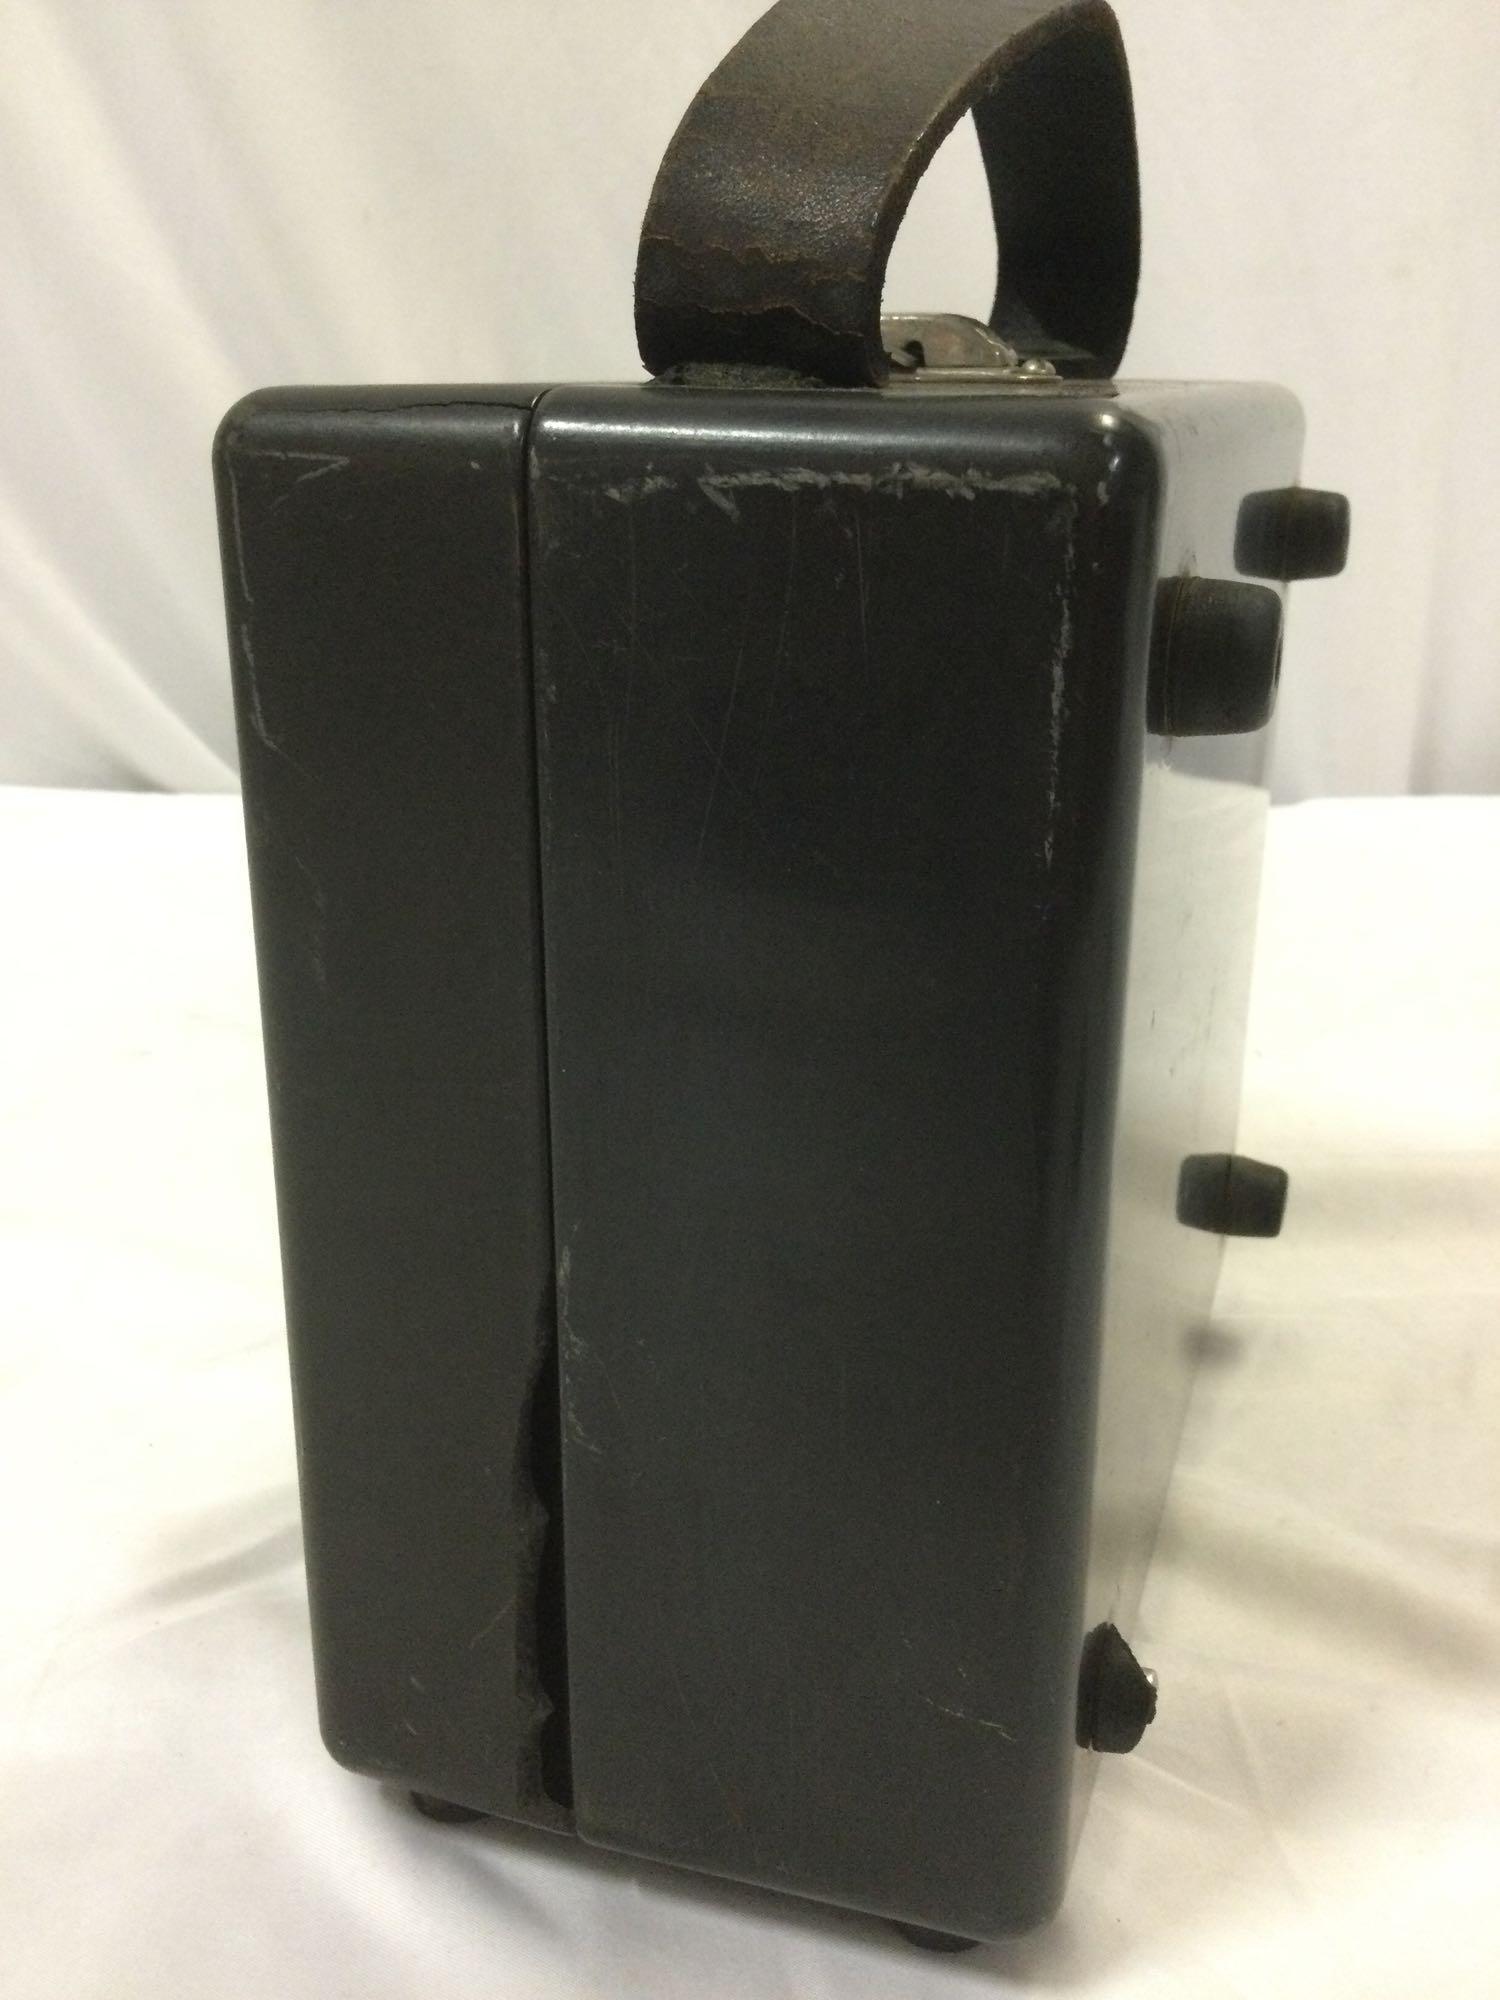 Antique WESTINGHOUSE Portable Millivolt Direct Current reader gauge